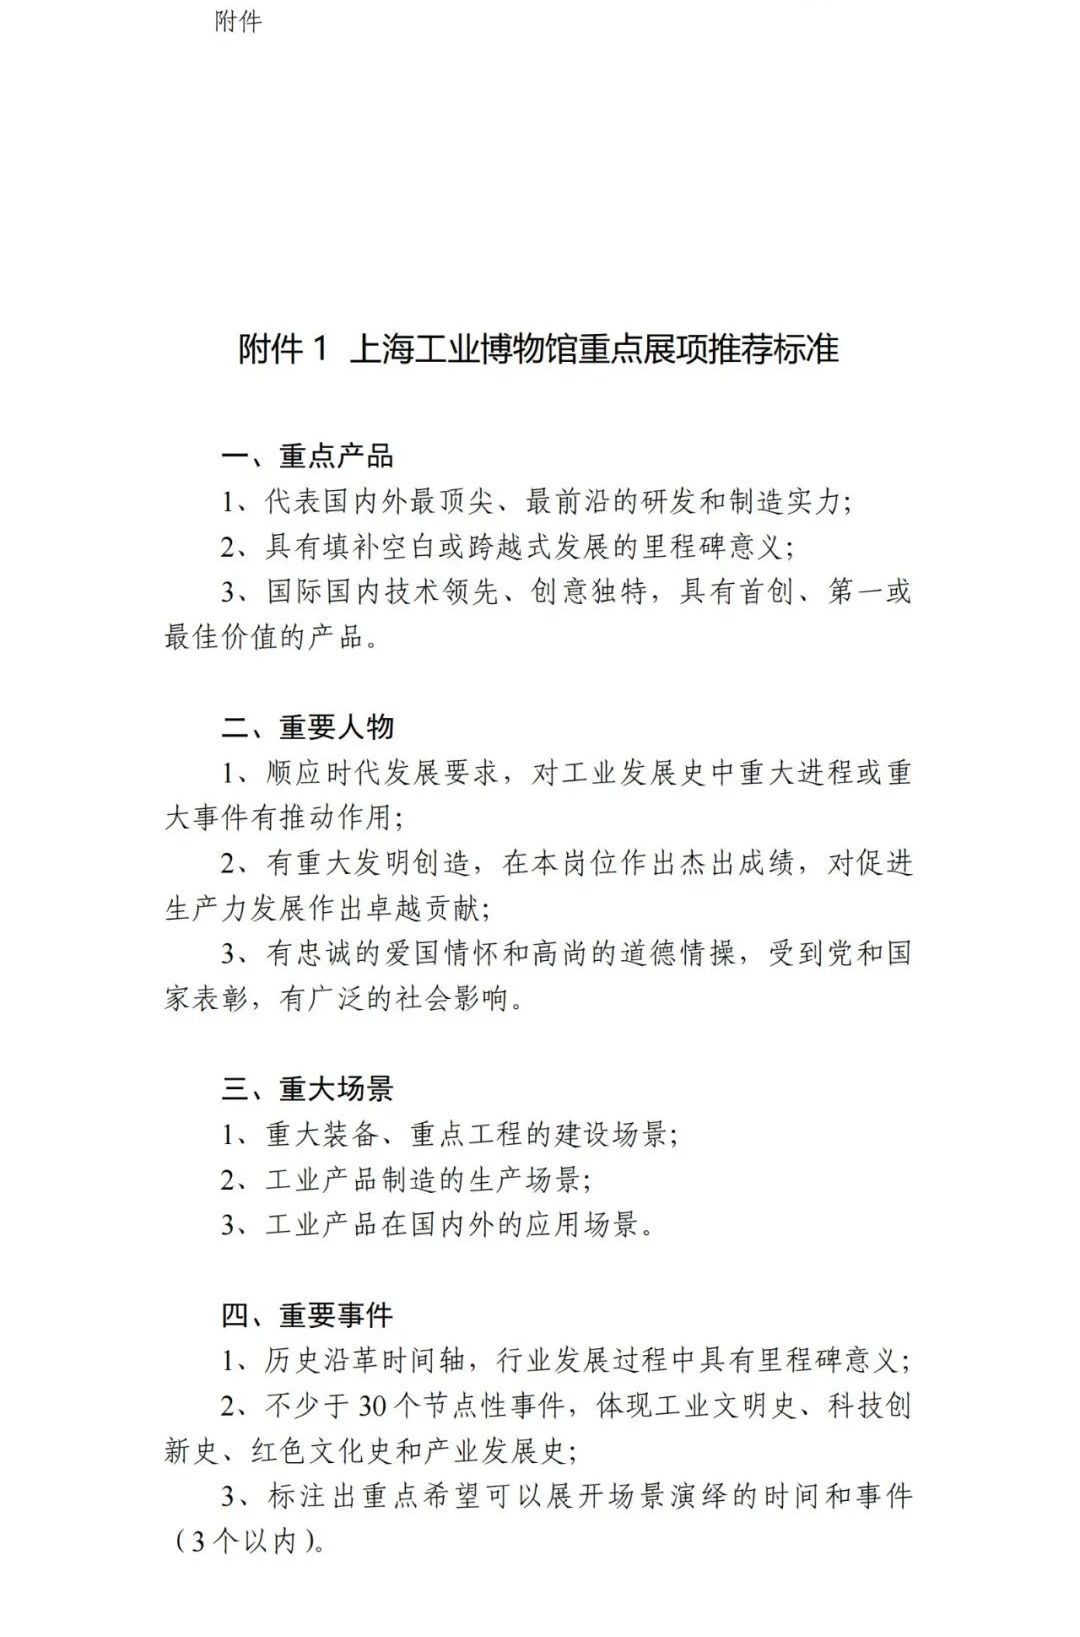 【通知】關于征集上海工業博物館重要展項的通知